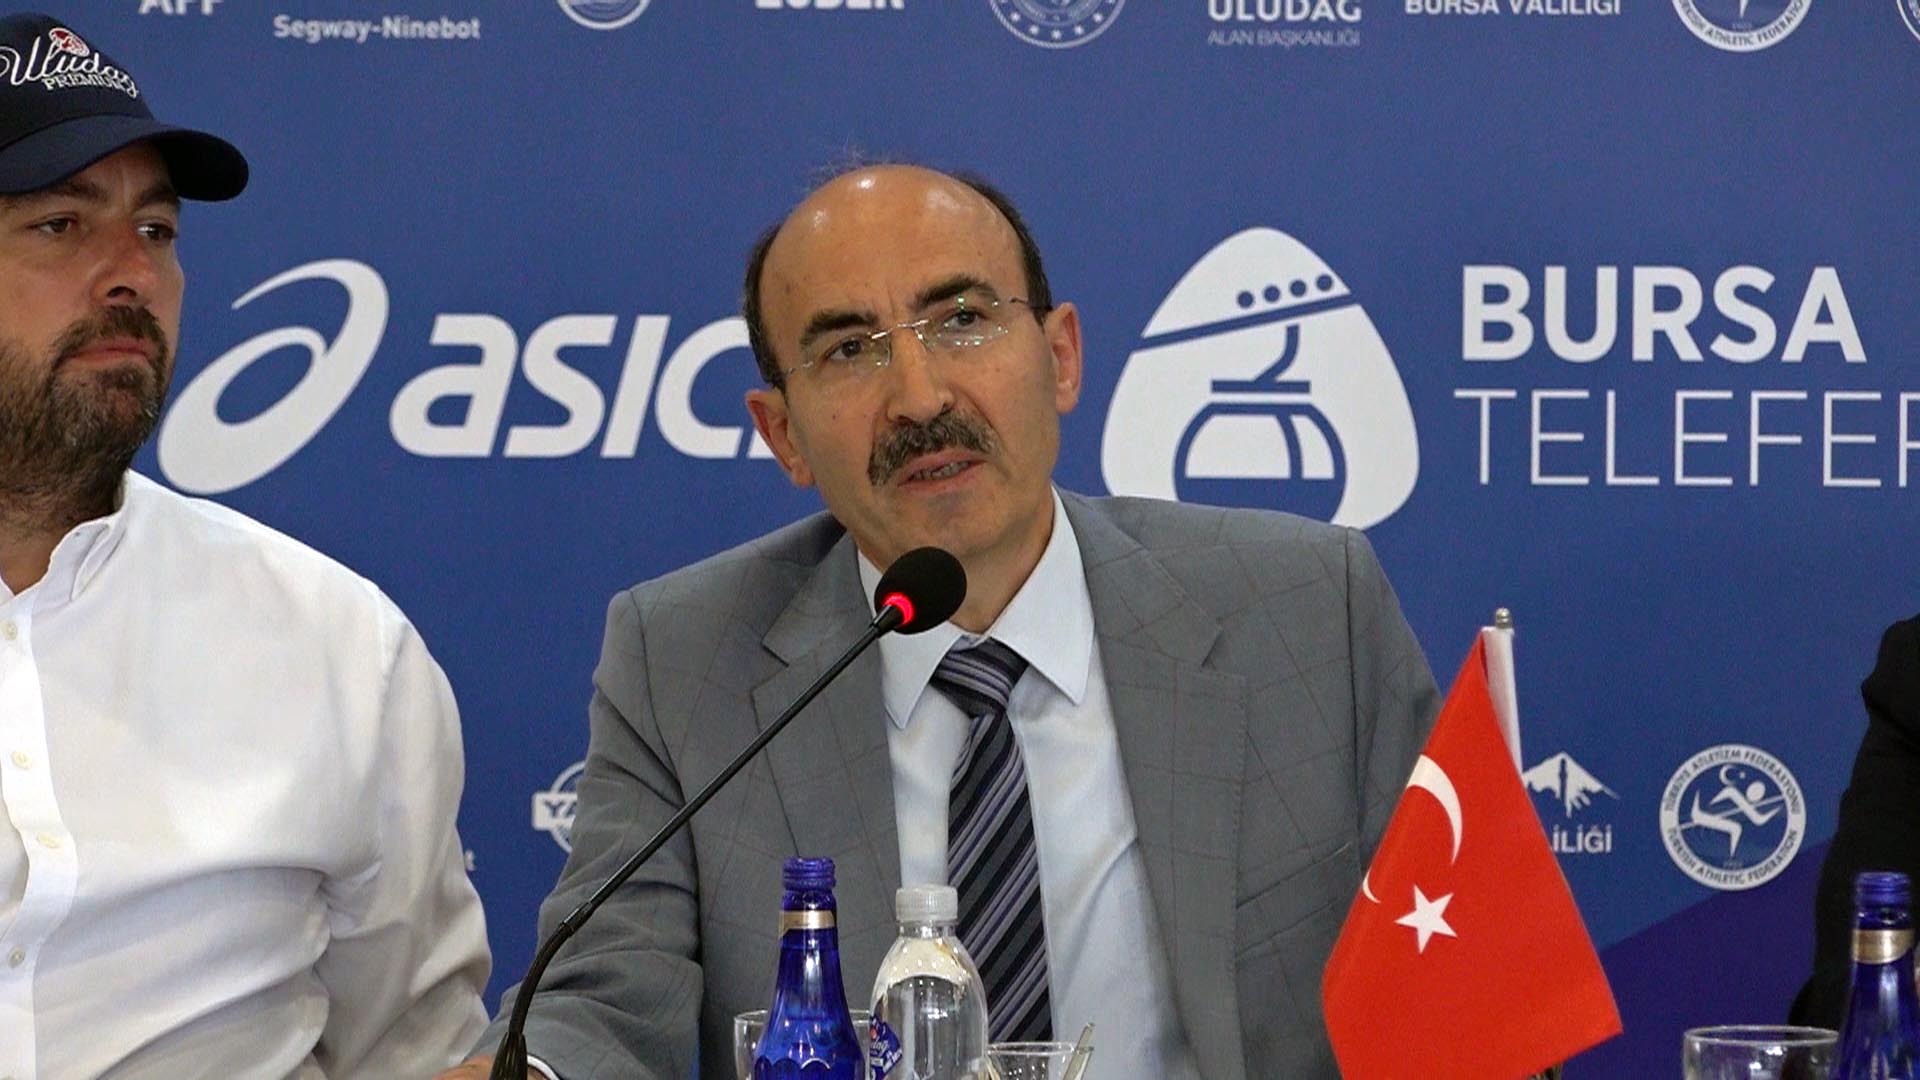 Bursa Vali Yardımcısı Mustafa Kılıç